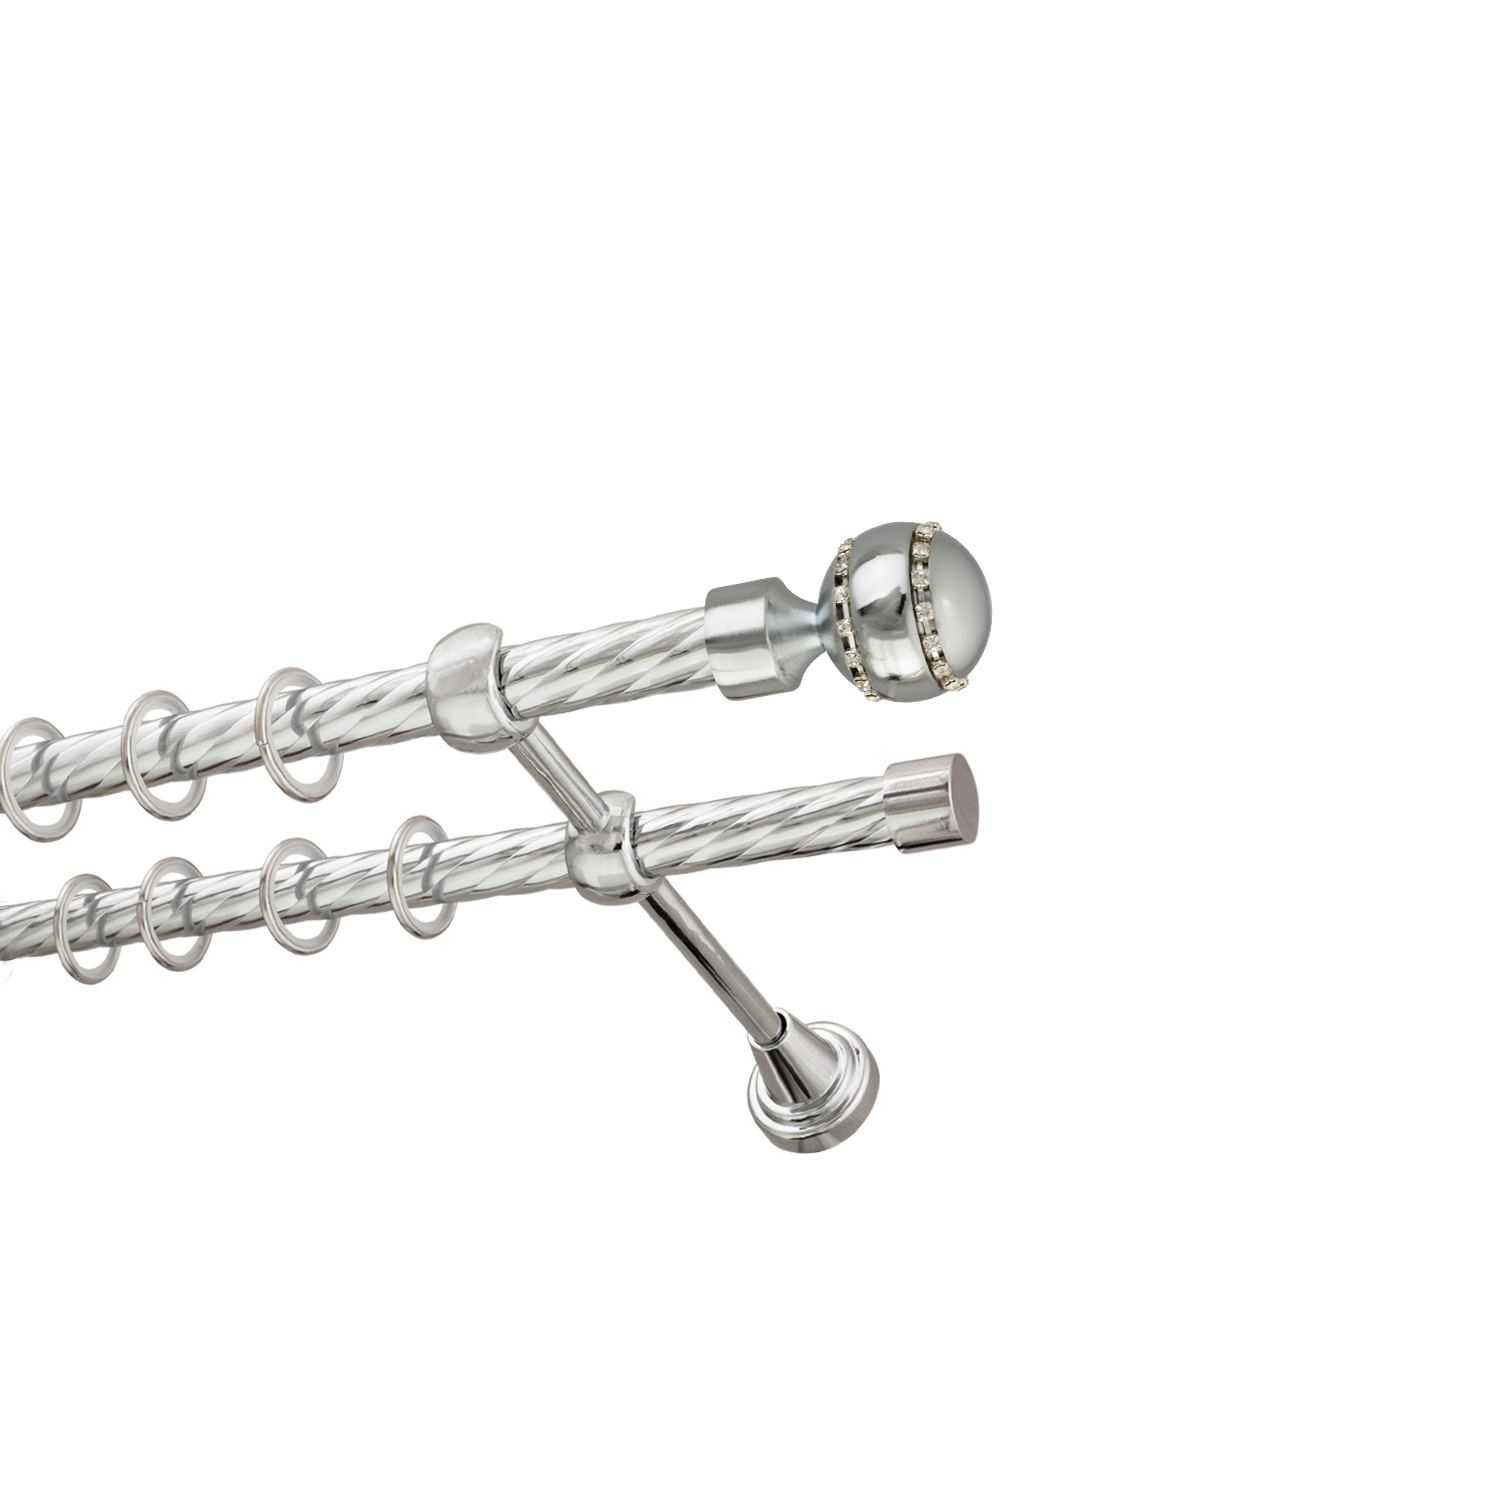 Металлический карниз для штор Модерн, двухрядный 16/16 мм, серебро, витая штанга, длина 180 см